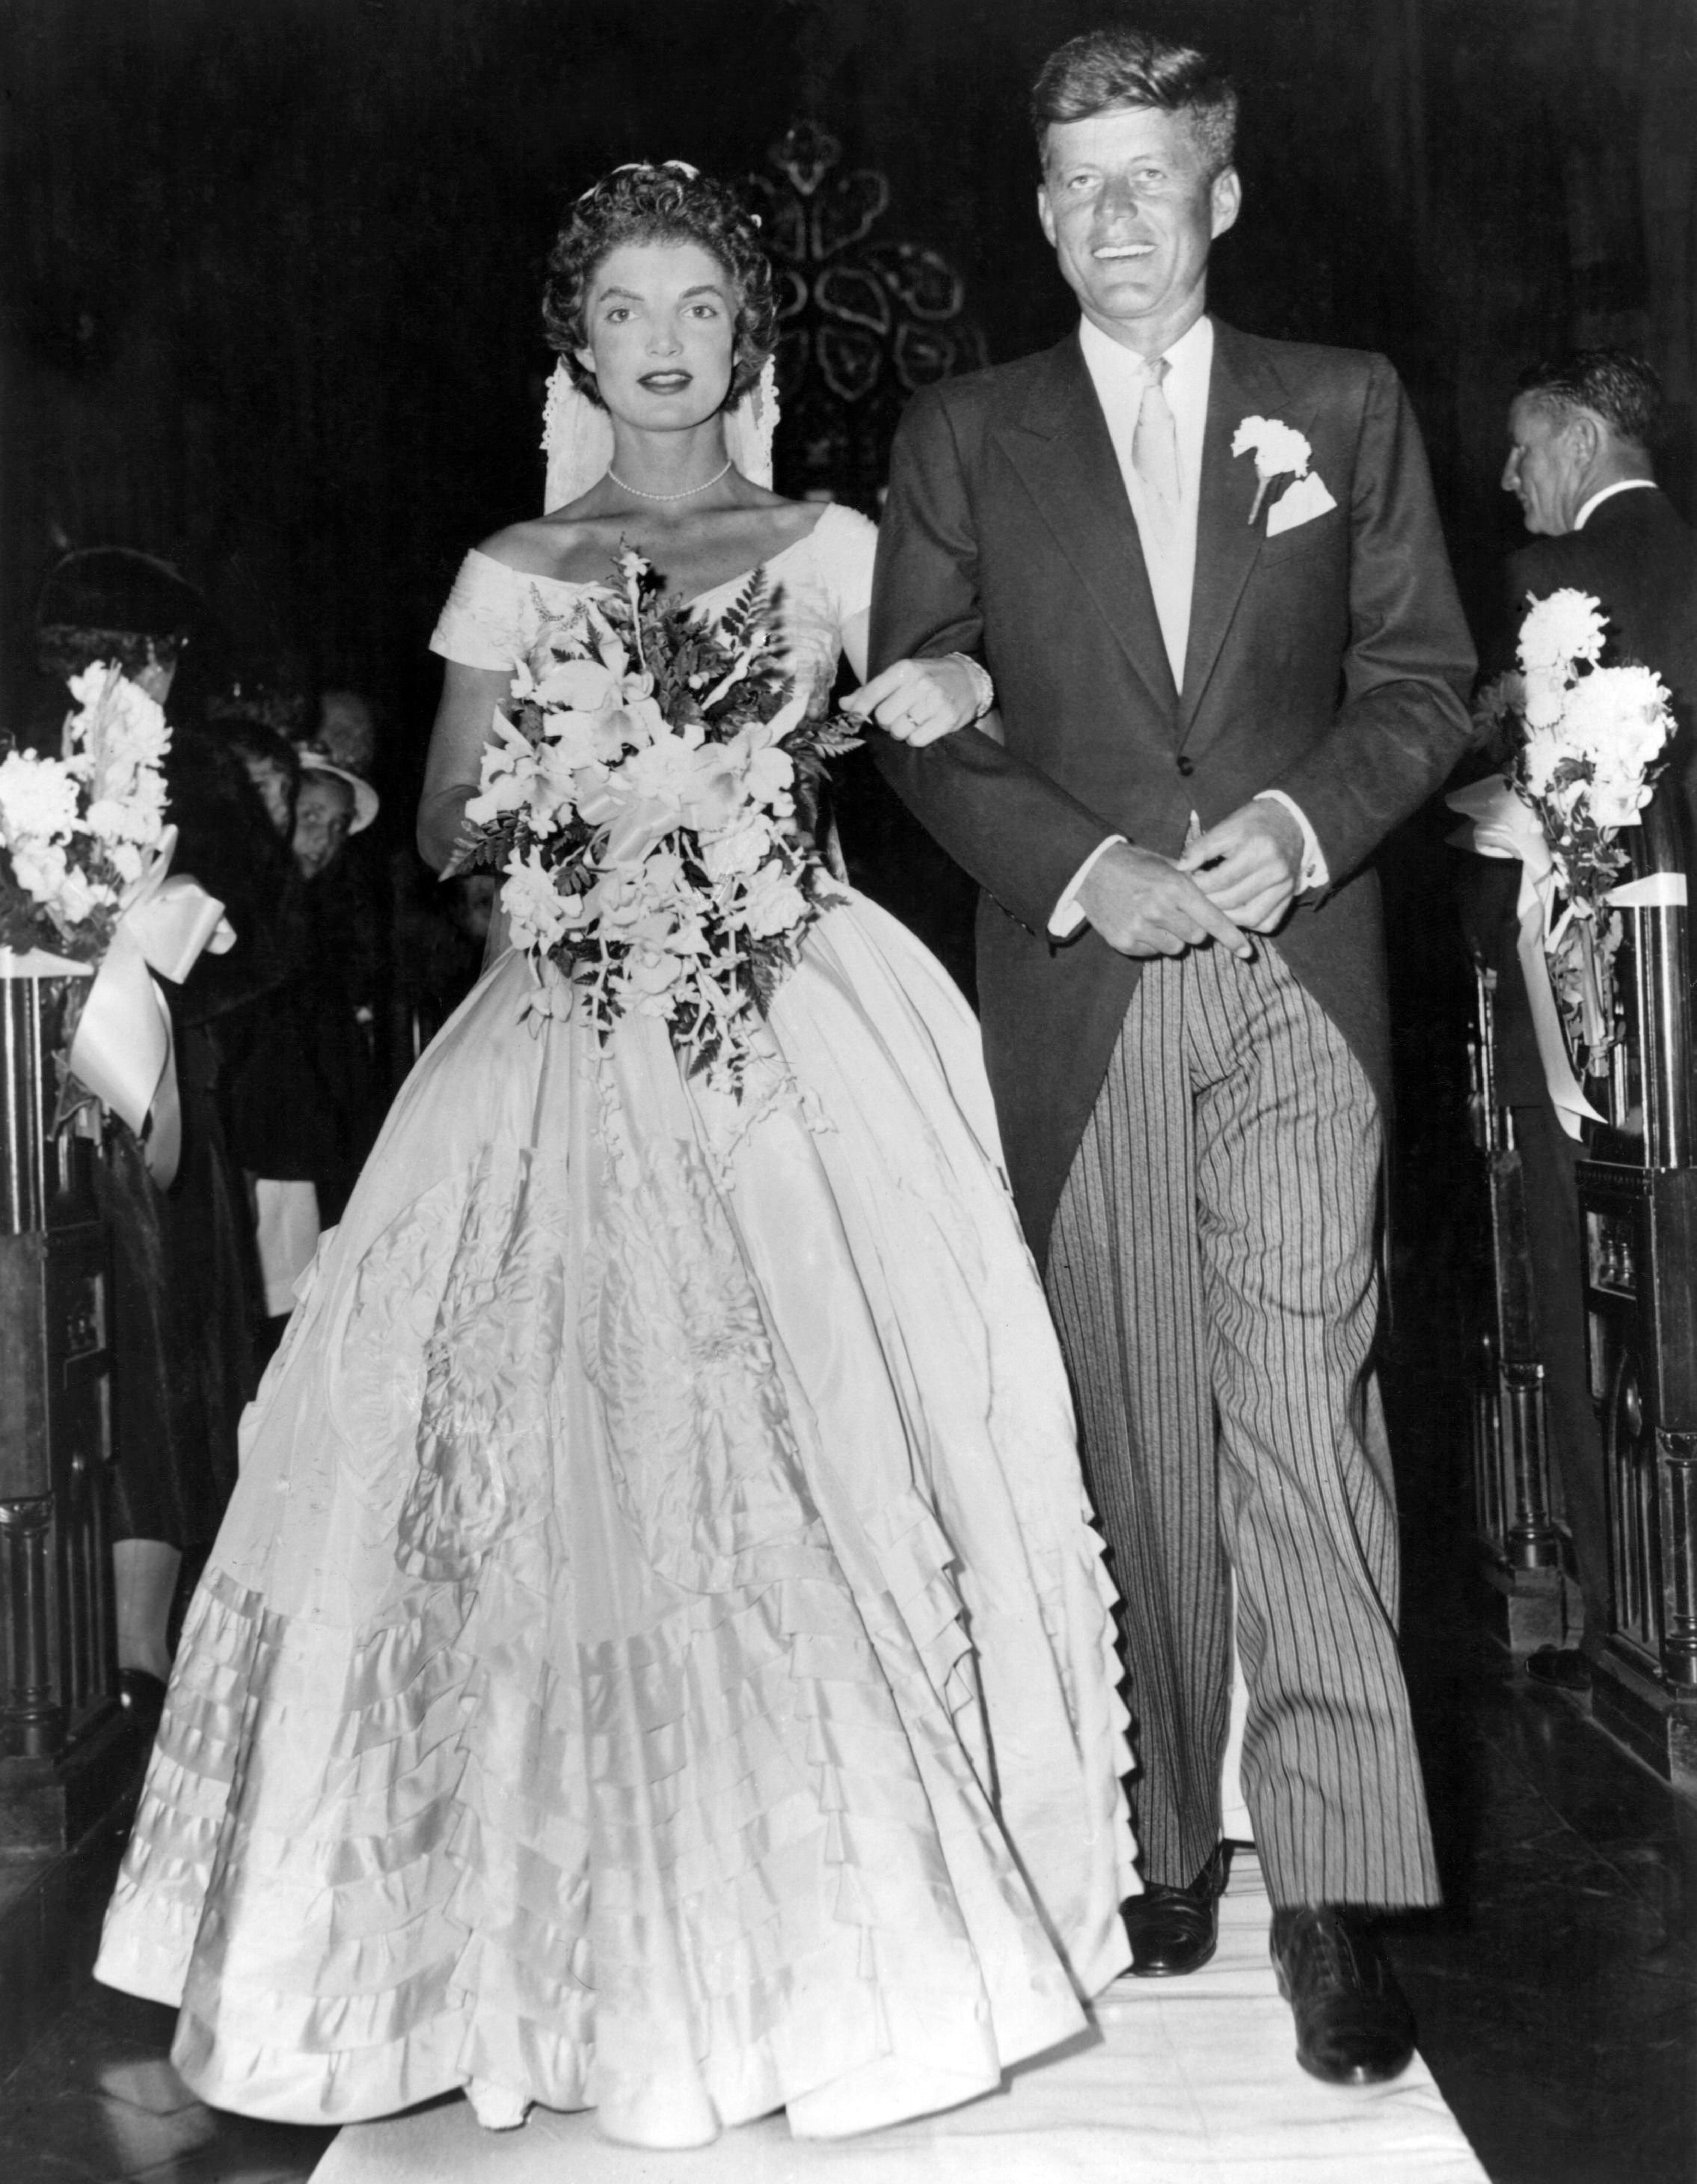 Le sénateur John Fitzgerald Kennedy escorte son épouse Jacqueline Lee Bouvier peu après leur cérémonie de mariage, le 12 septembre 1953, à Newport, Rhode Island | Photo : Keystone/Getty Images